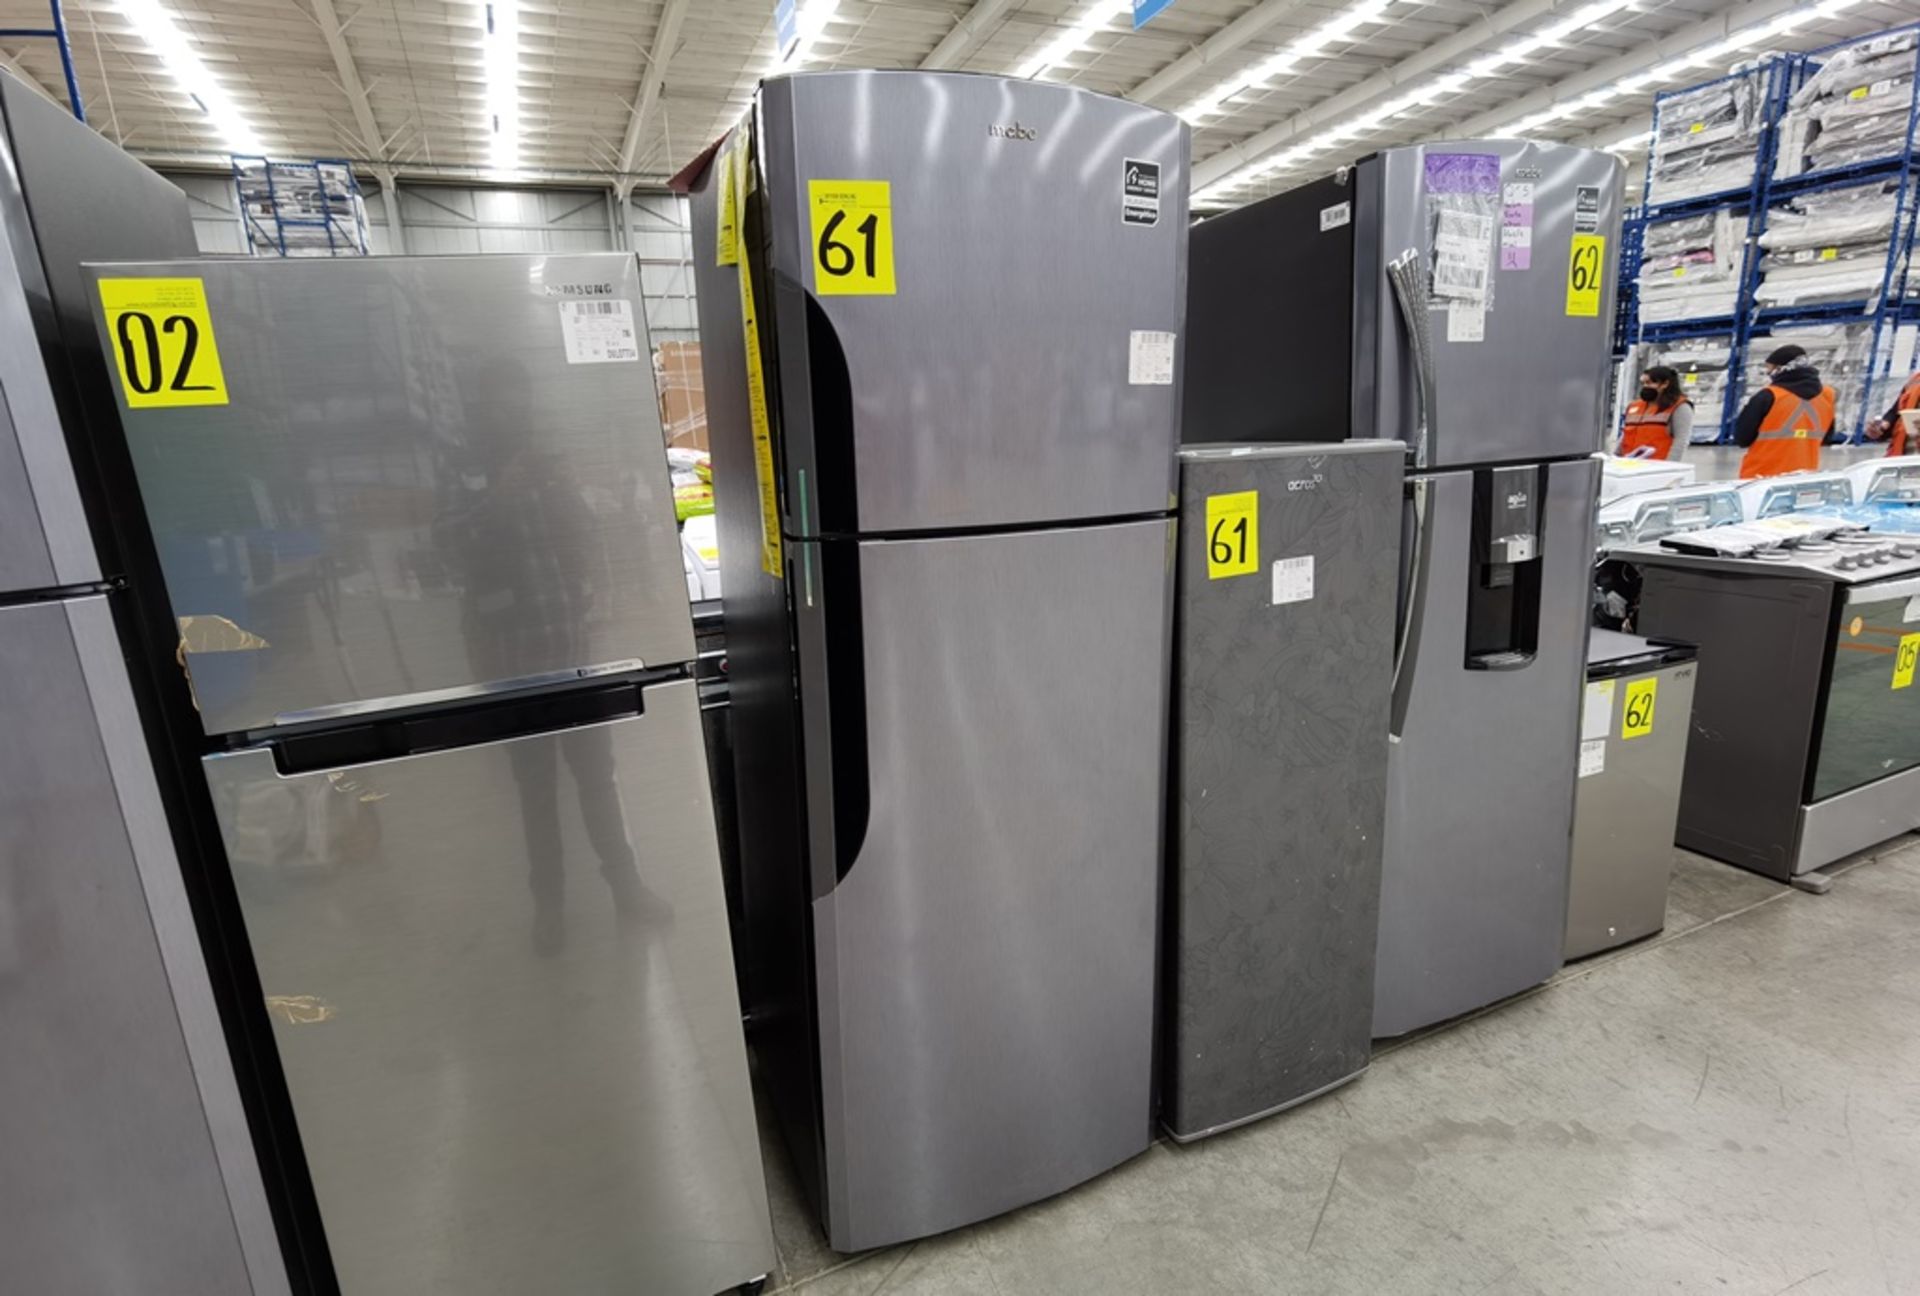 Lote de 2 refrigeradores conformado por: 1 Refrigerador maca Mabe Modelo RMS400IX, No de serie 2204 - Image 3 of 14